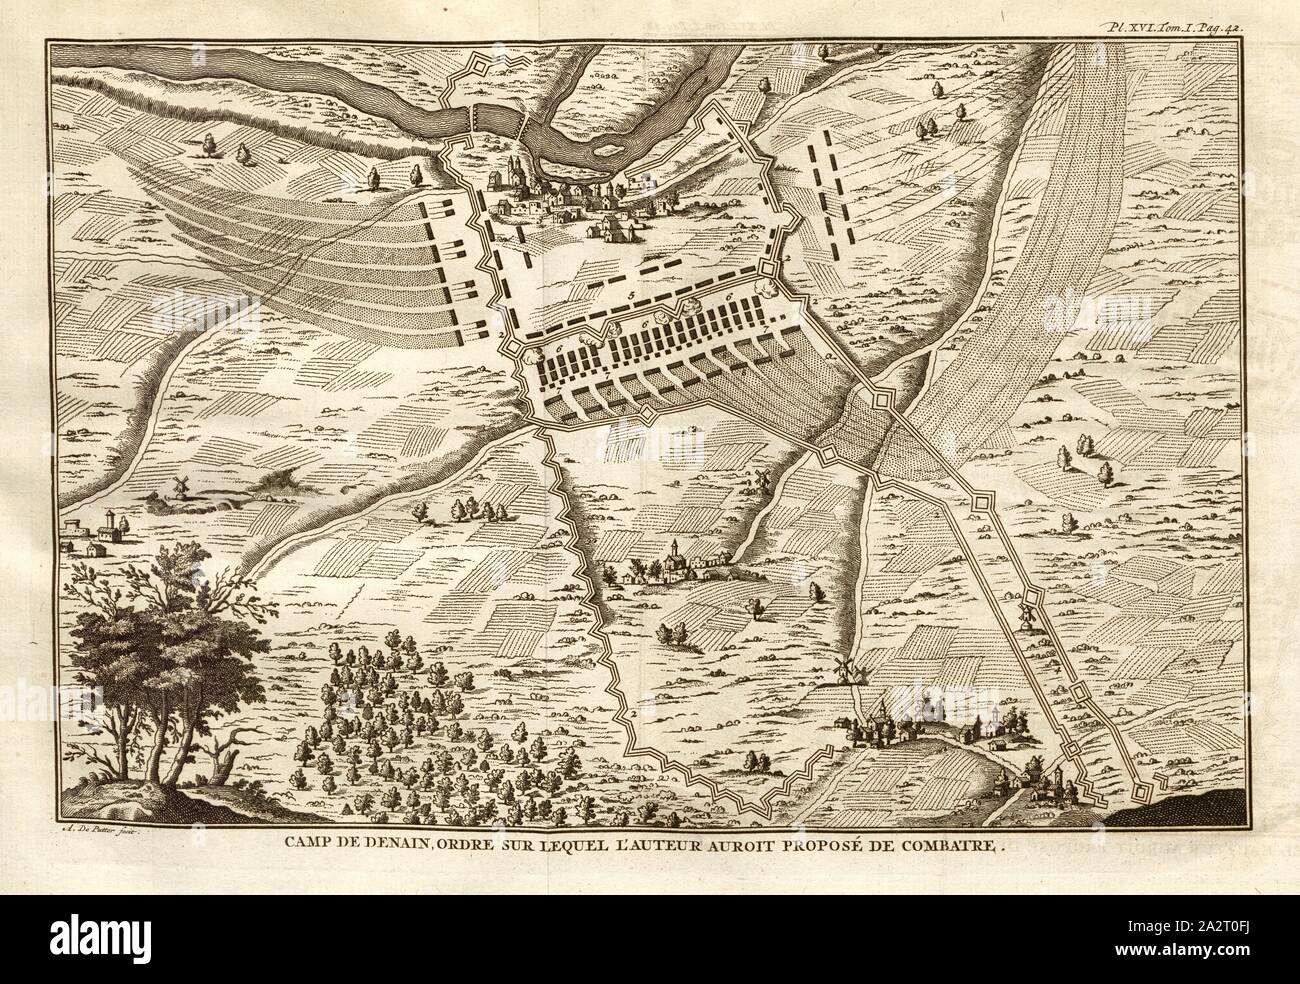 Camp de Denain, ordine sul quale l'autore avrebbe proposto di lotta, la linea di battaglia per la battaglia di Denain, come l'autore avrebbe suggerito, firmato: A. De Putter fecit, Pl. XVI, Tom., I, PAG. 42, dopo p. 42, putter, A. de (fec.);, 1774, Polibio; Vincent Thuillier; Jean Charles de Folard: Histoire de Polybe. Tome 1; Amsterdam: Arkstée et Merkus, MDCCLXXIV [1774 Foto Stock